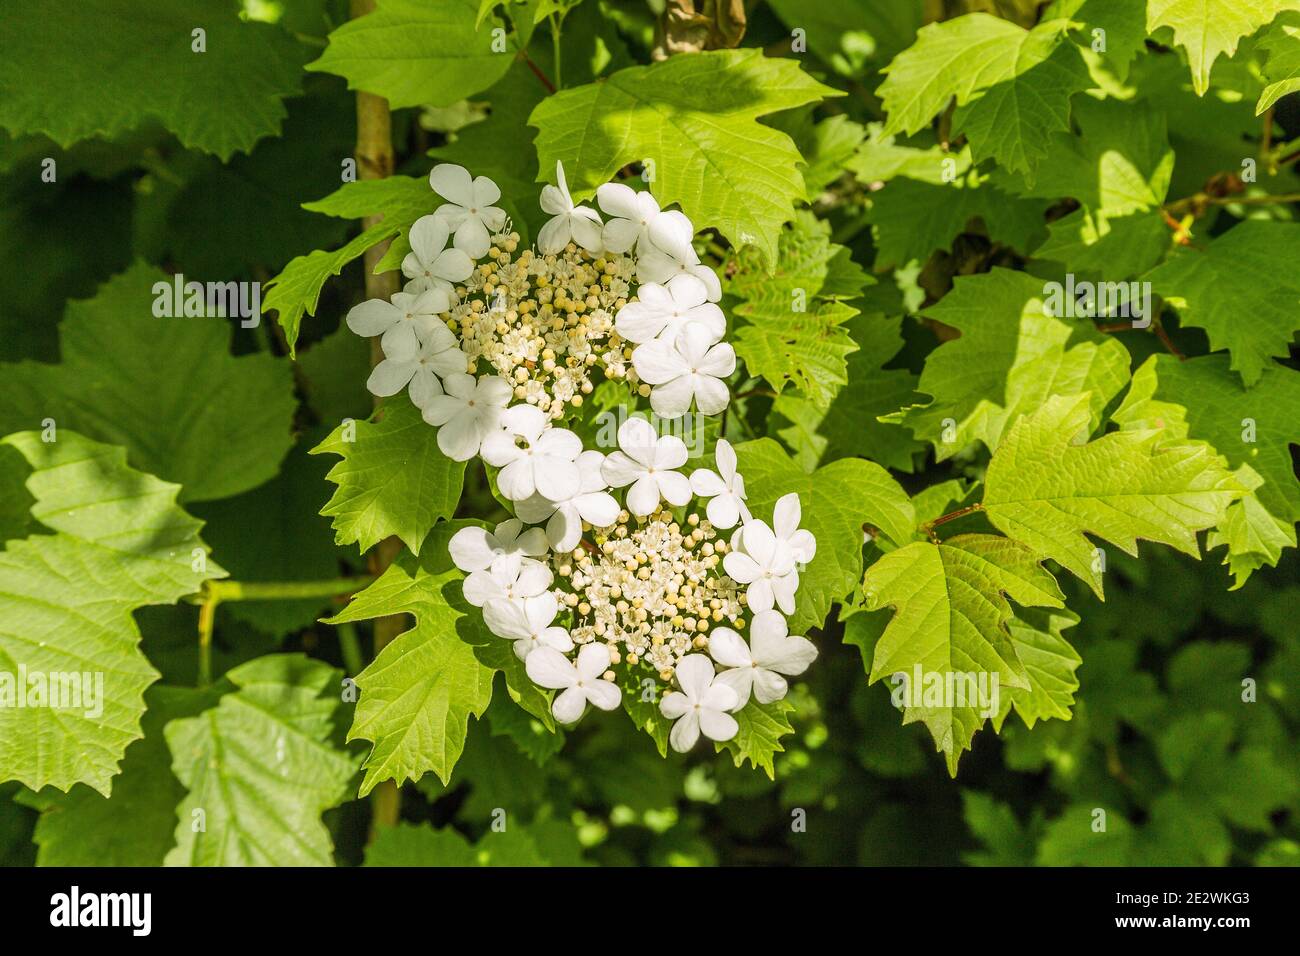 Close-up of white cream colored flower of Guelder rose, Viburnum opulus, Stock Photo